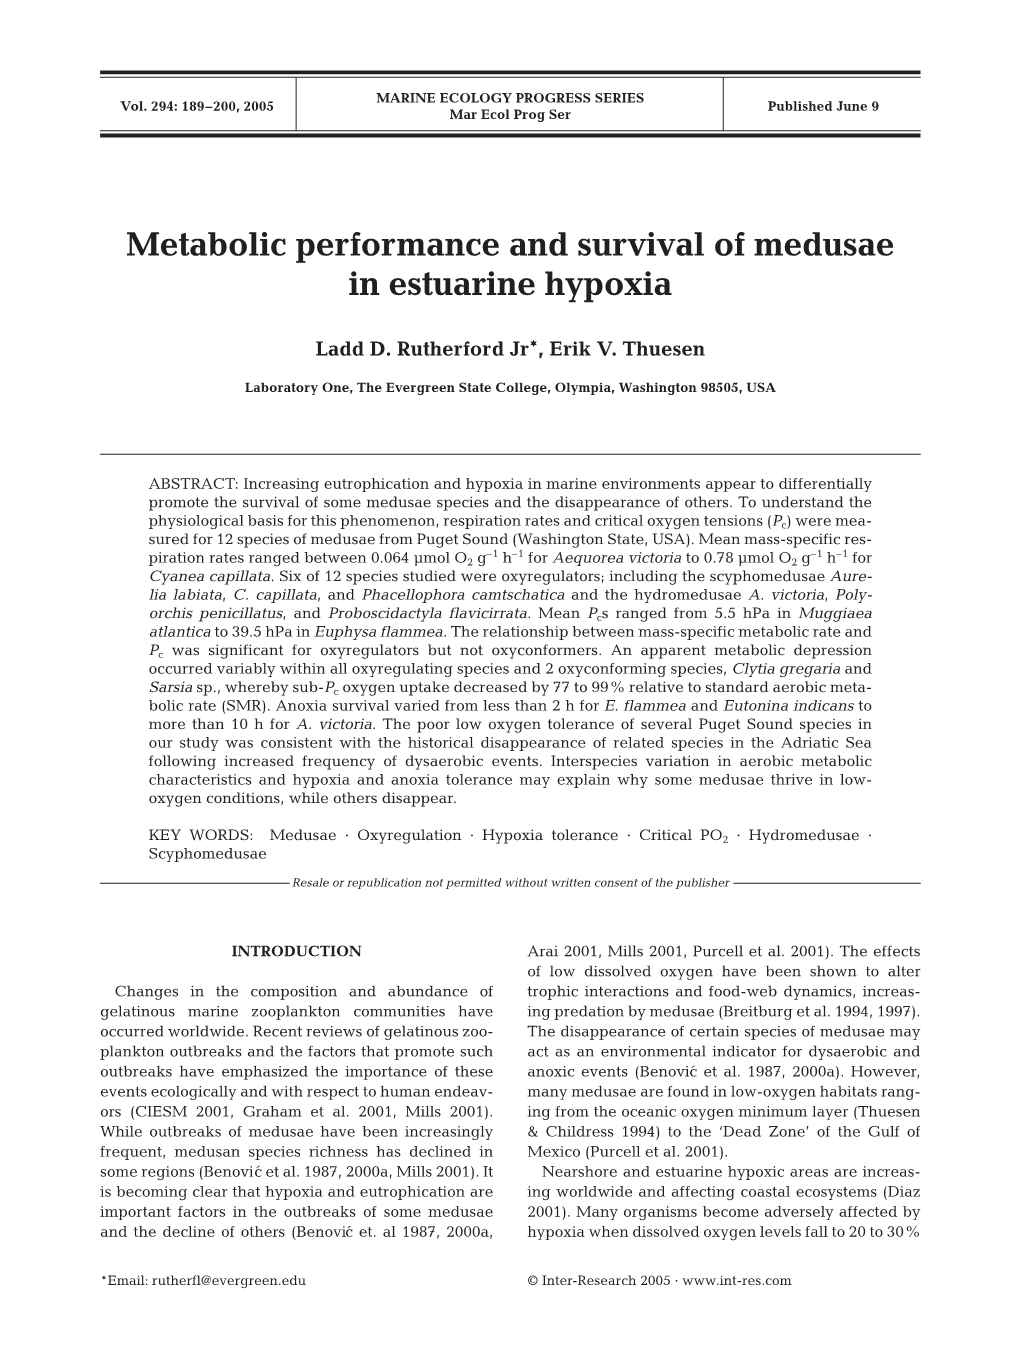 Metabolic Performance and Survival of Medusae in Estuarine Hypoxia